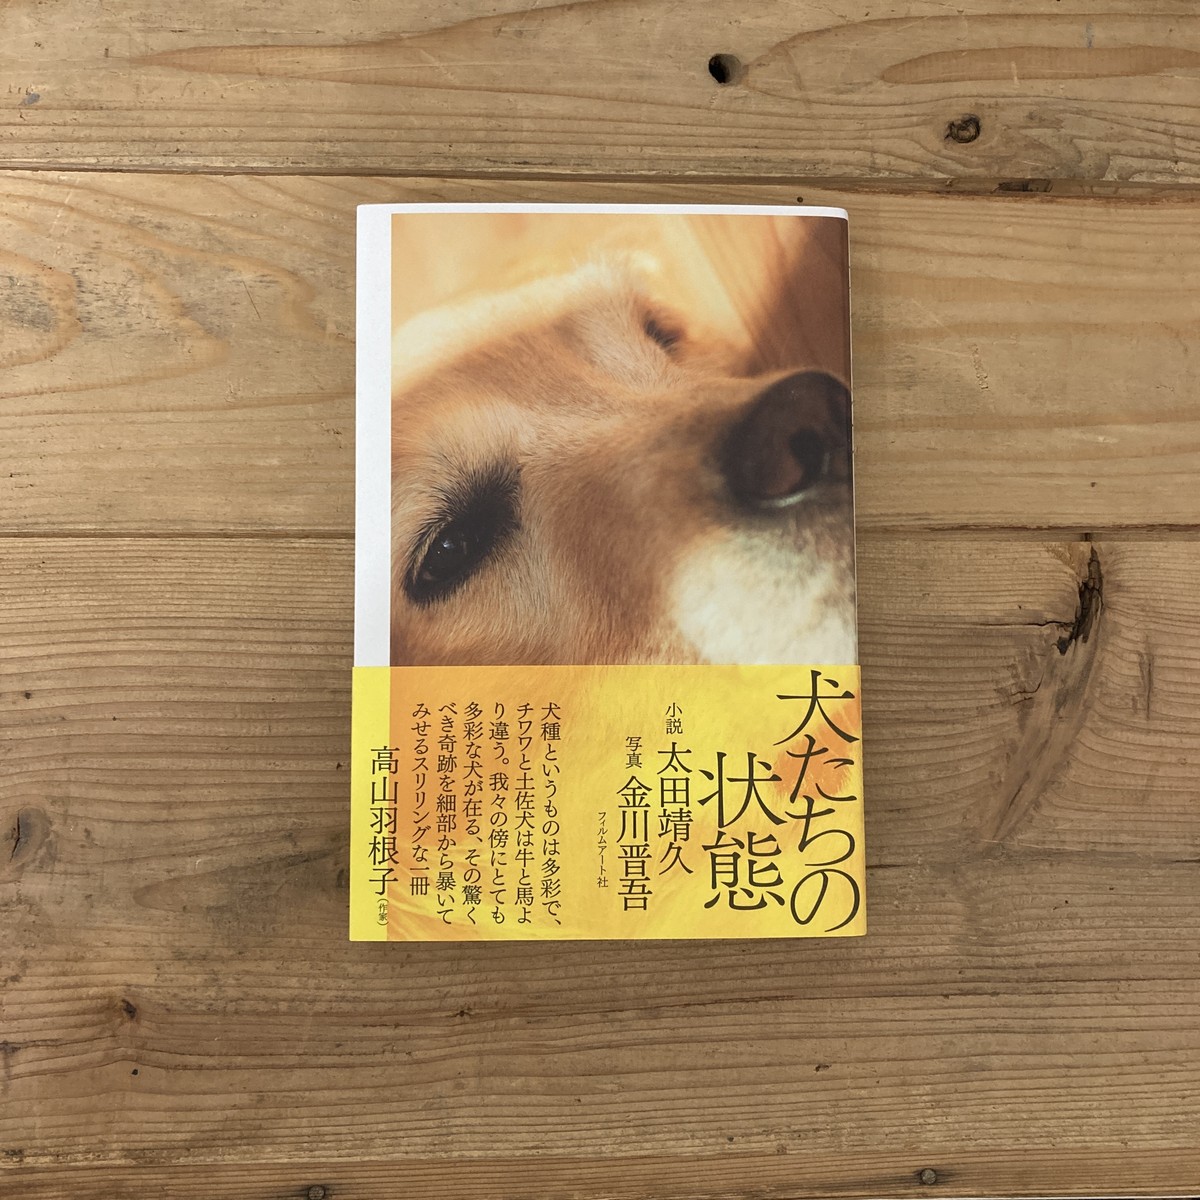 新刊 犬たちの状態 太田靖久 小説 金川晋吾 写真 フィルムアート 双子のライオン堂 書店